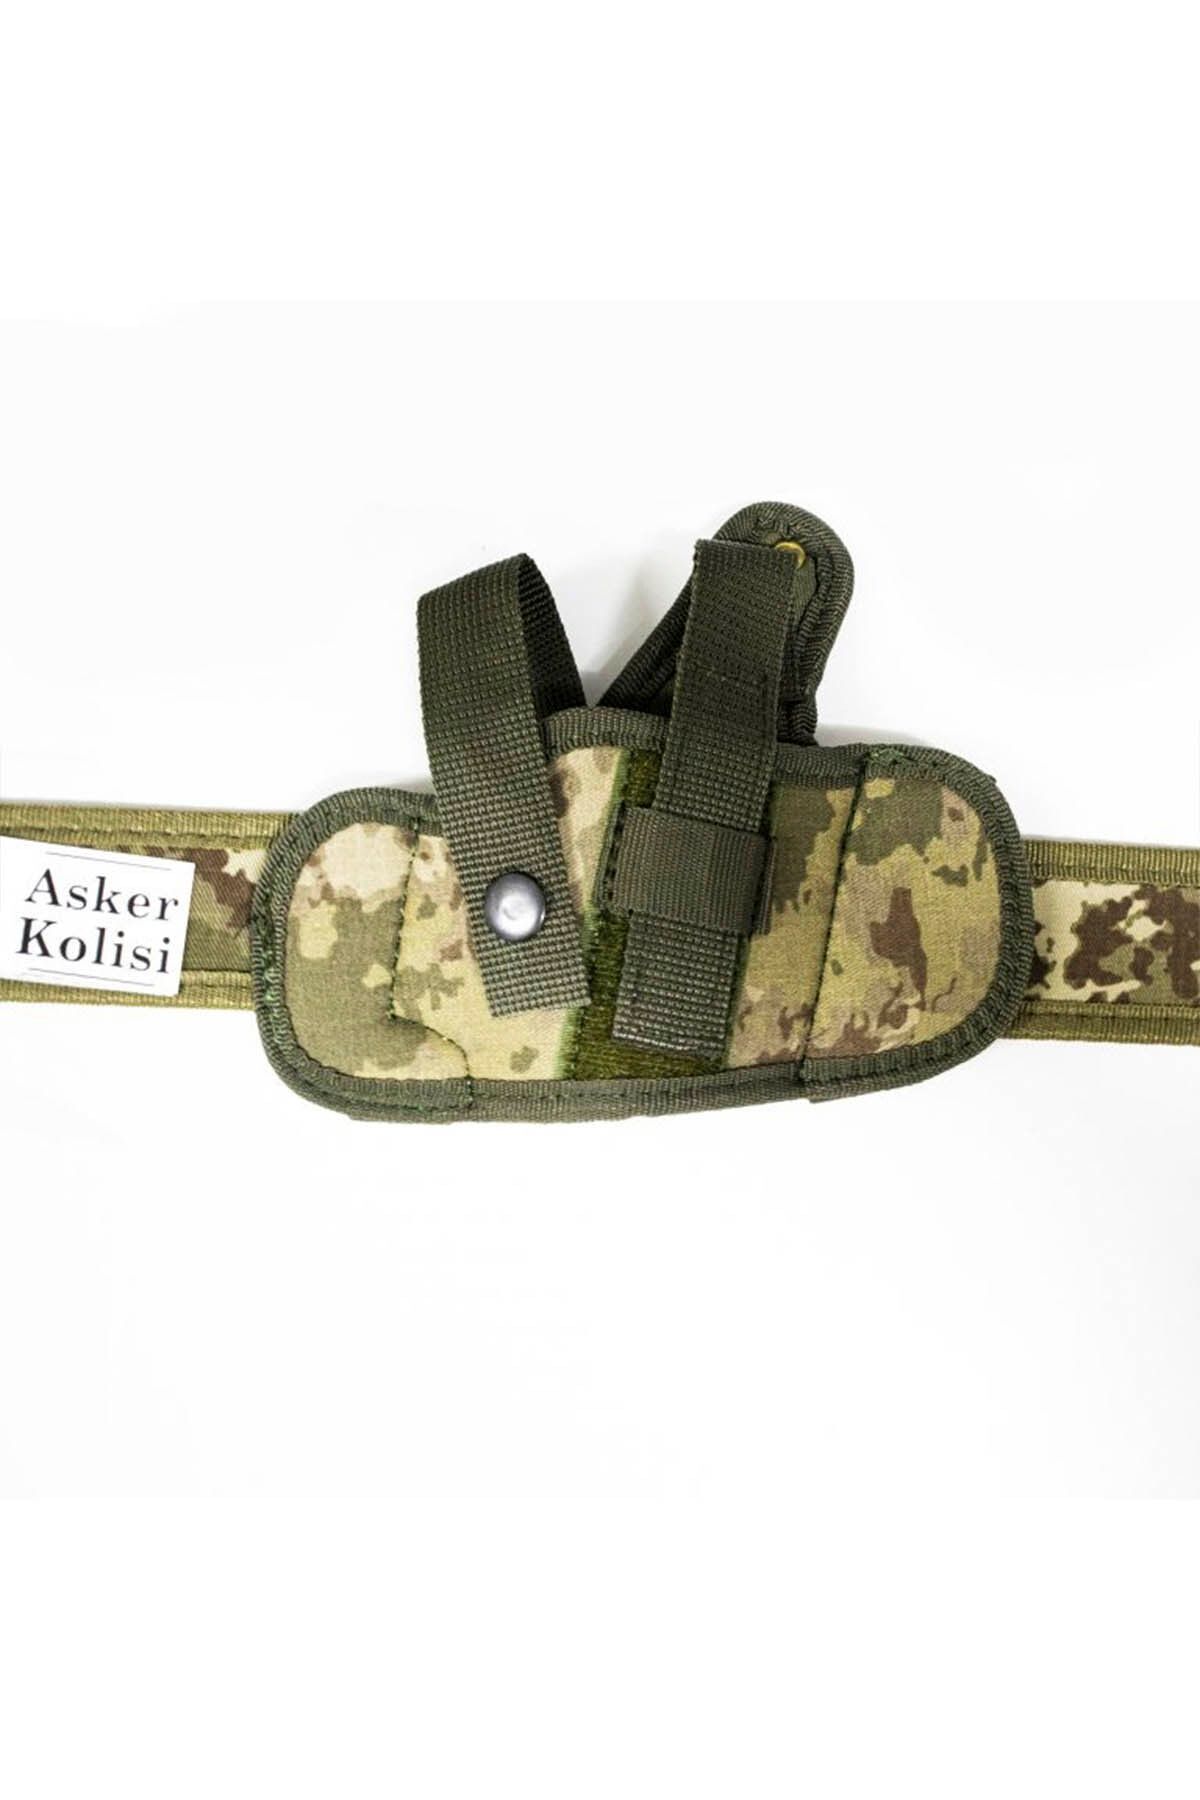 Asker Kolisi Cırtlı Yarım Kelebek Yeni Tsk Kamuflaj Kılıf - Askeri Ürün